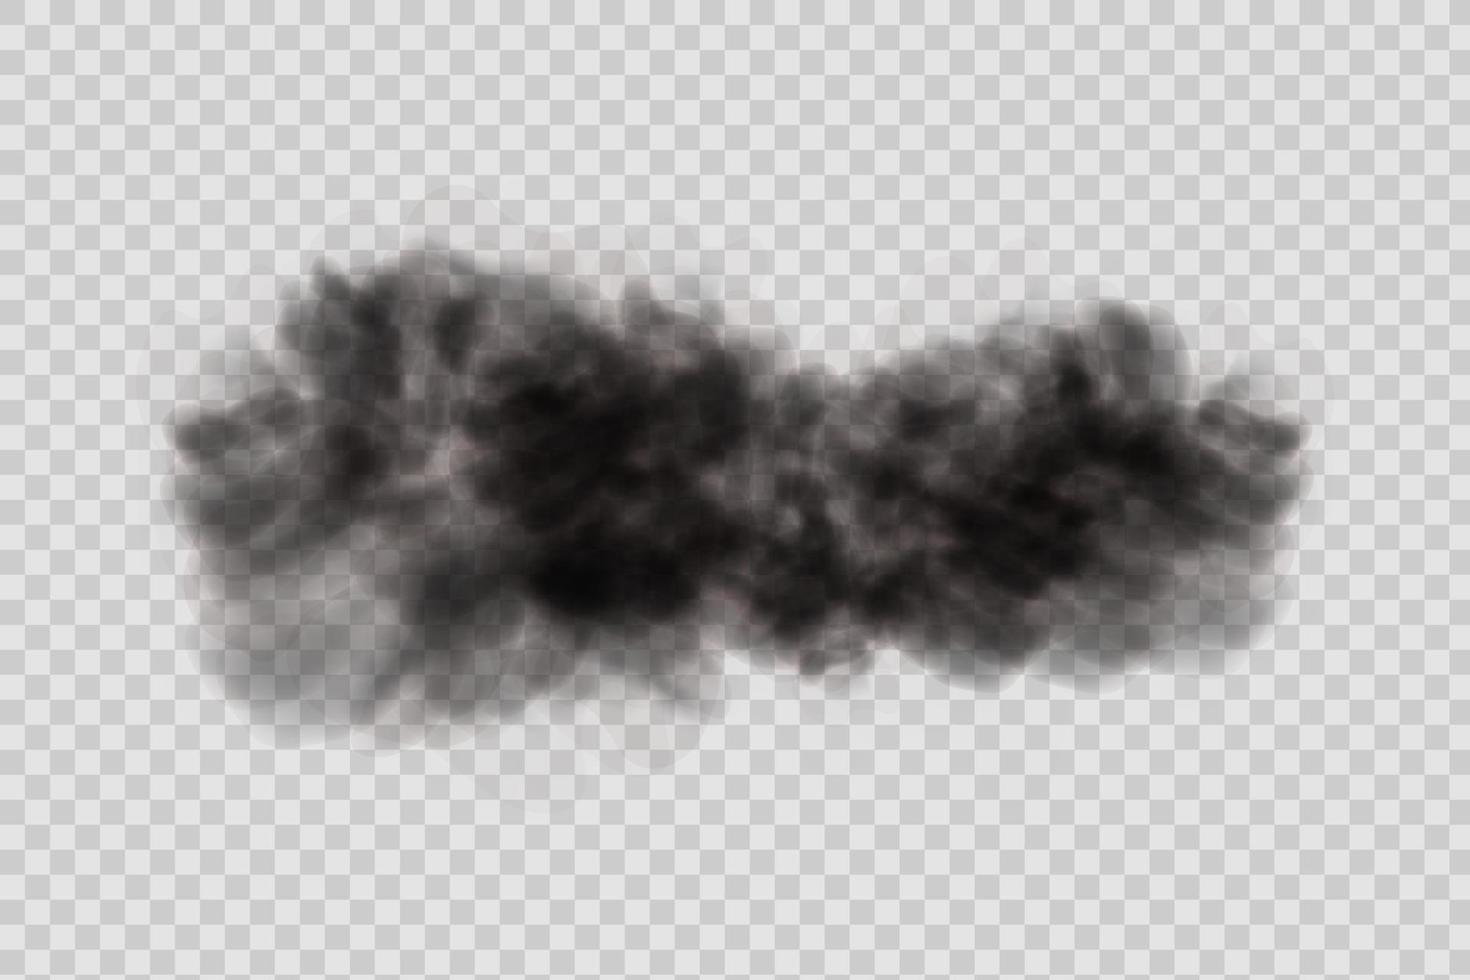 polvo negro, nubes y niebla. vector